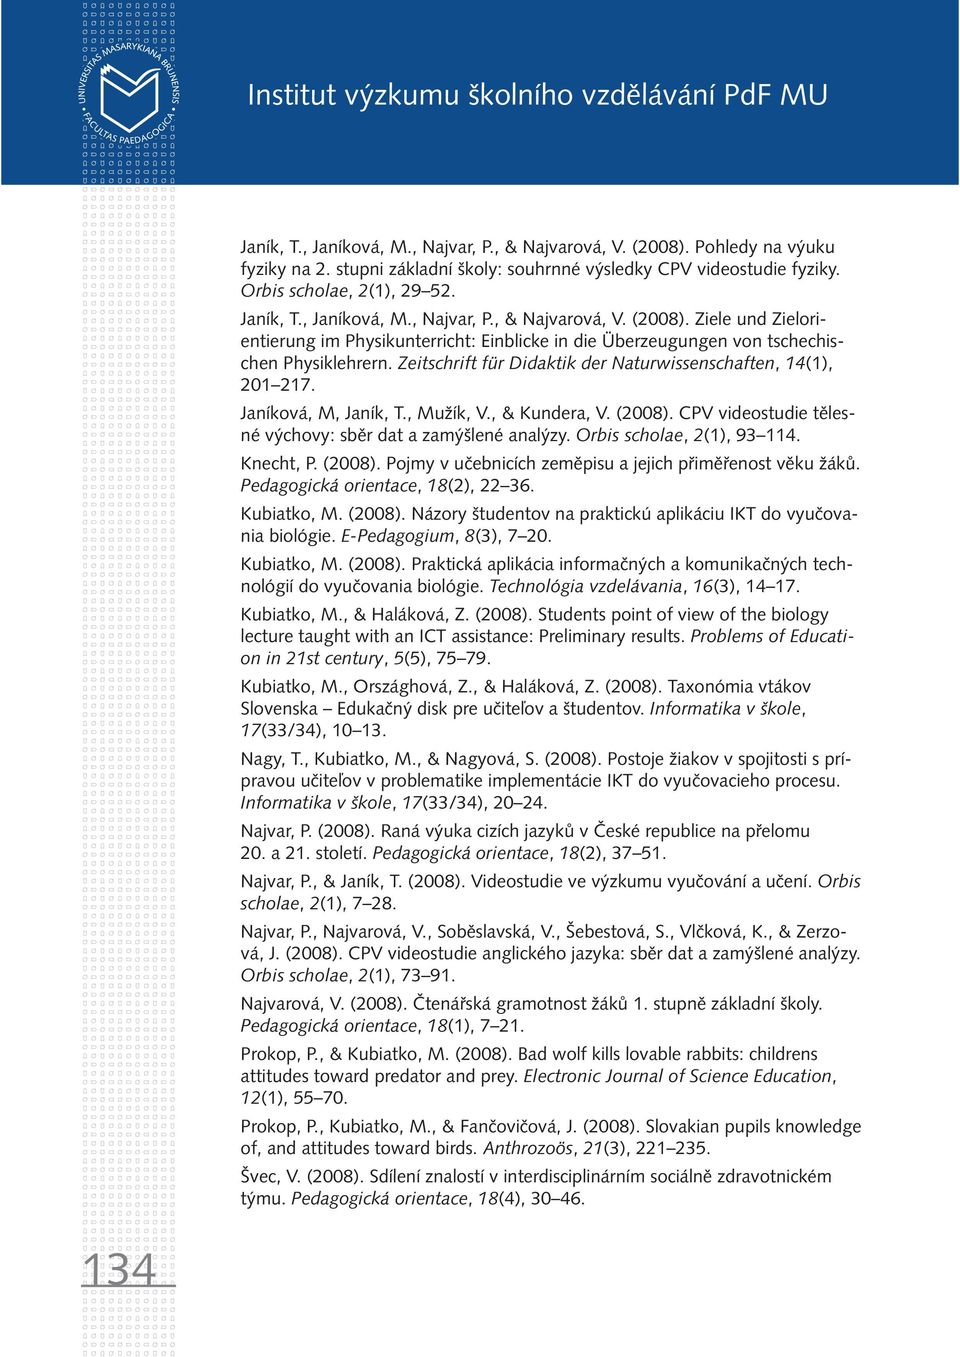 Zeitschrift für Didaktik der Naturwissenschaften, 14(1), 201 217. Janíková, M, Janík, T., Mužík, V., & Kundera, V. (2008). CPV videostudie tělesné výchovy: sběr dat a zamýšlené analýzy.